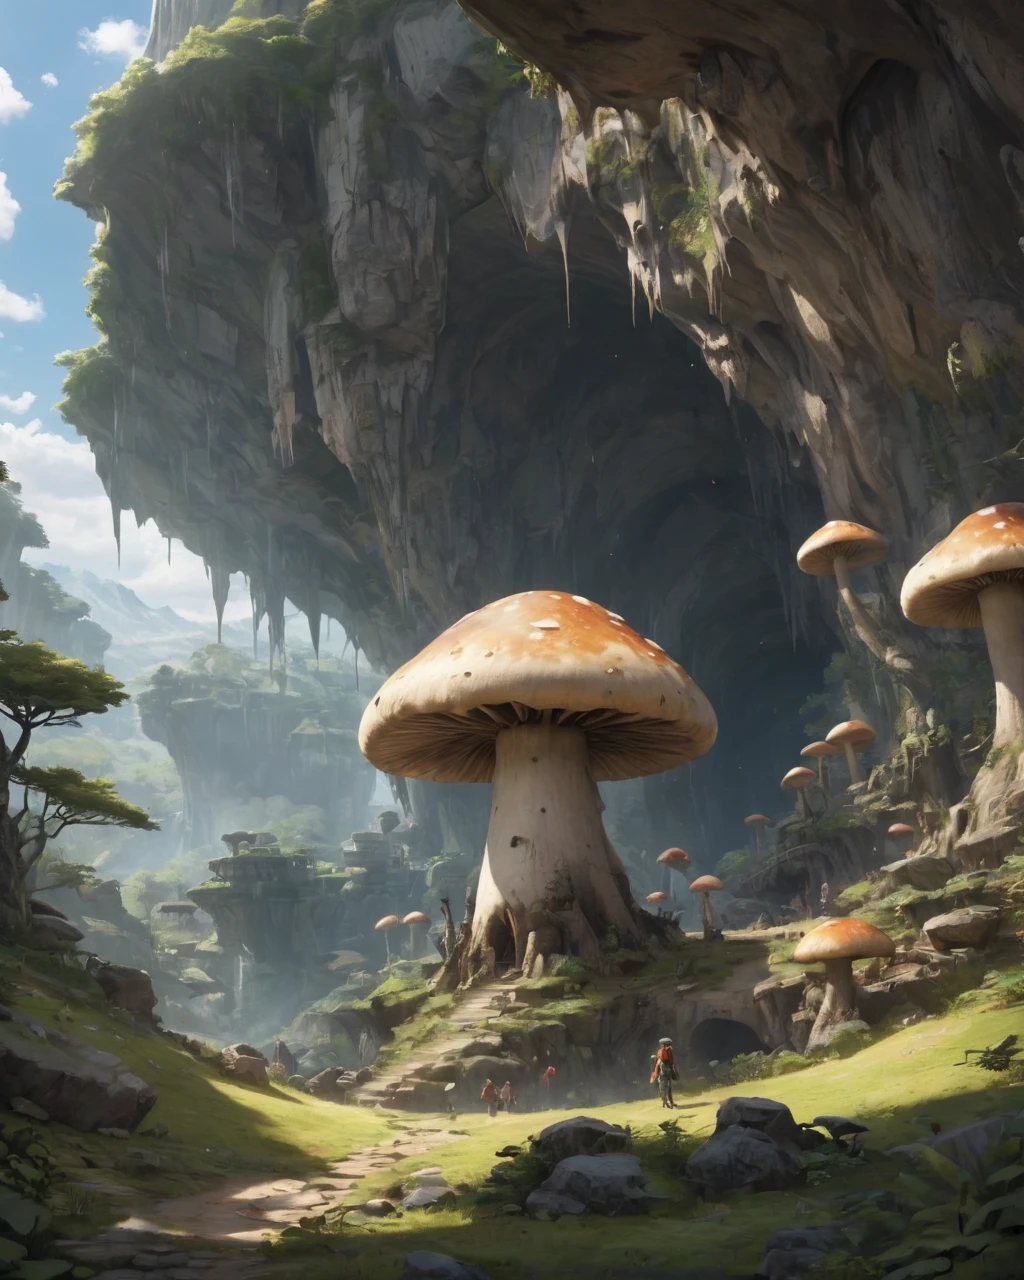 巨大的地下洞穴、巨型蘑菇、长毛象、在悬崖上、